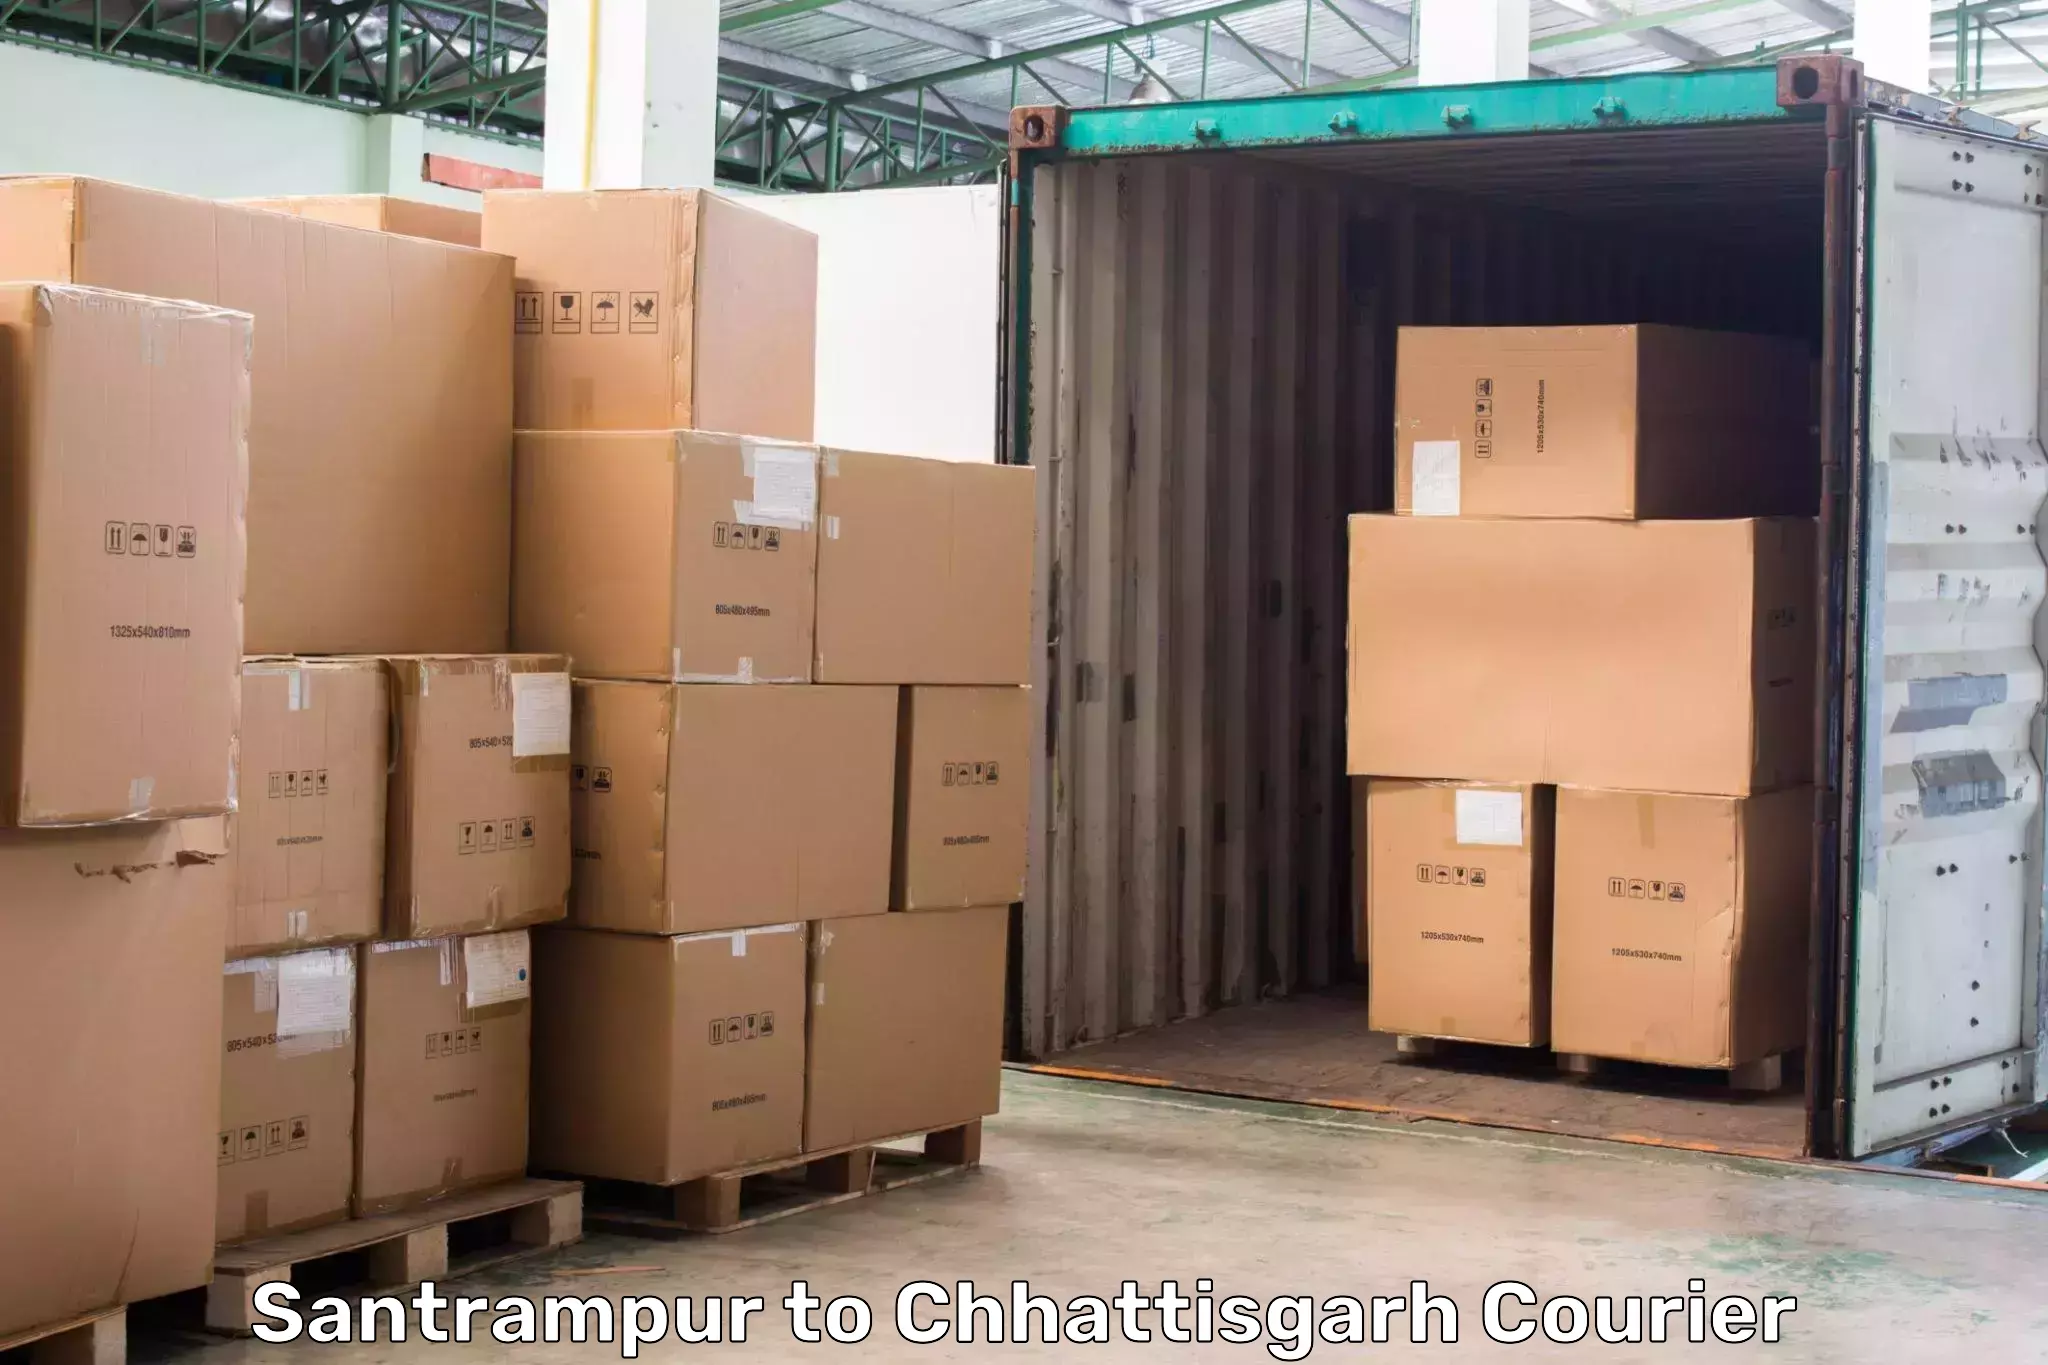 Next-generation courier services Santrampur to Chhattisgarh